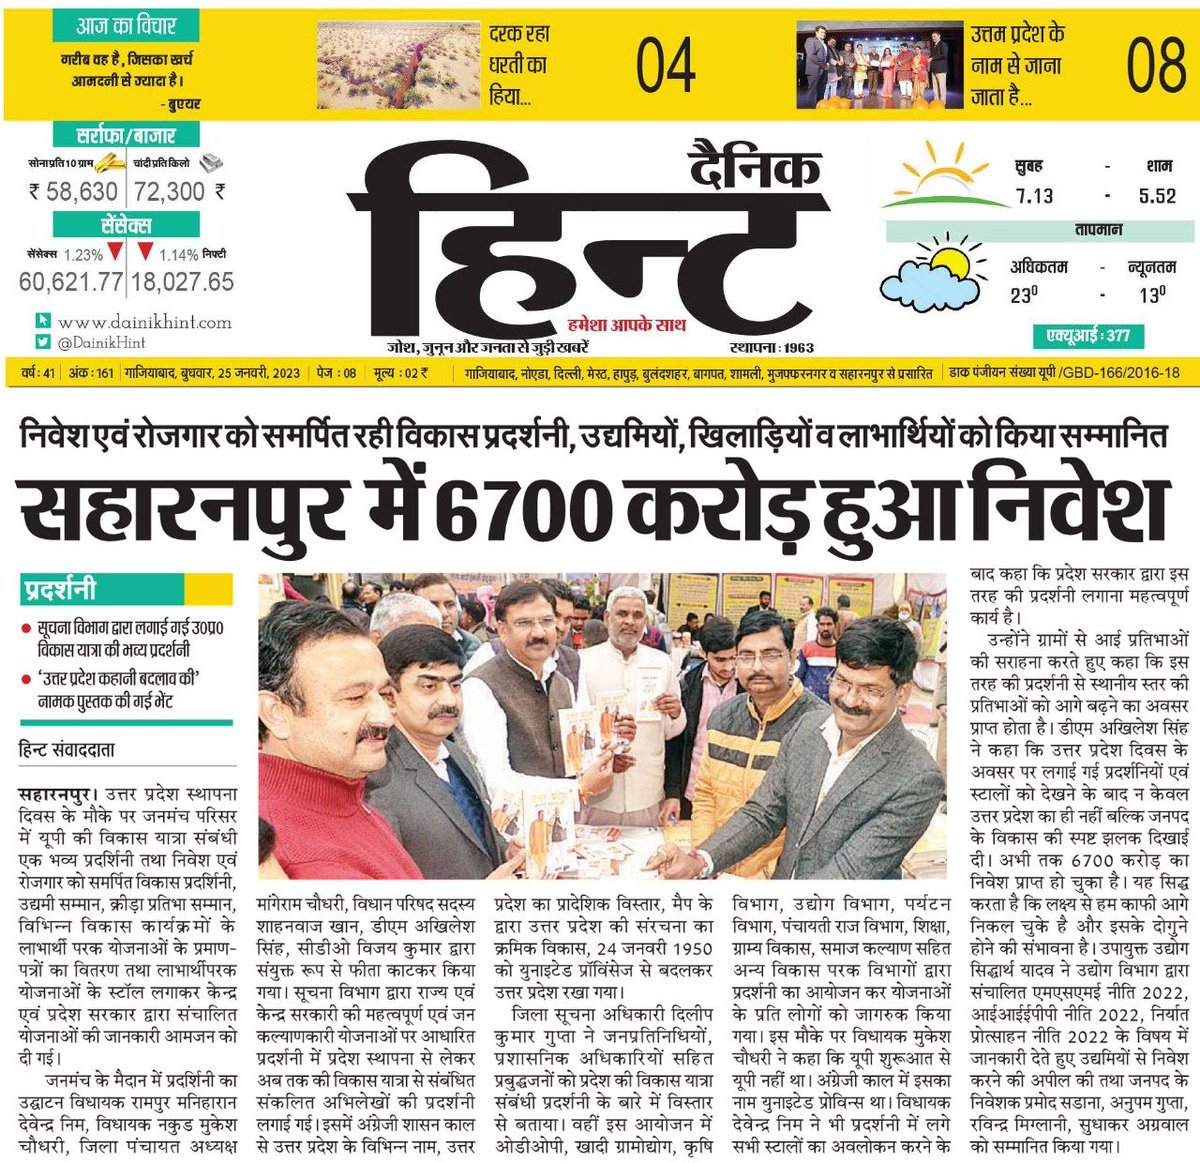 #सहारनपुर- में उत्तर प्रदेश के स्थापना दिवस के मौके पर सहारनपुर में 6700 करोड़ का हुआ निवेश. 

#UttarPradeshSthapnaDivas2023 #UttarPradeshDivas